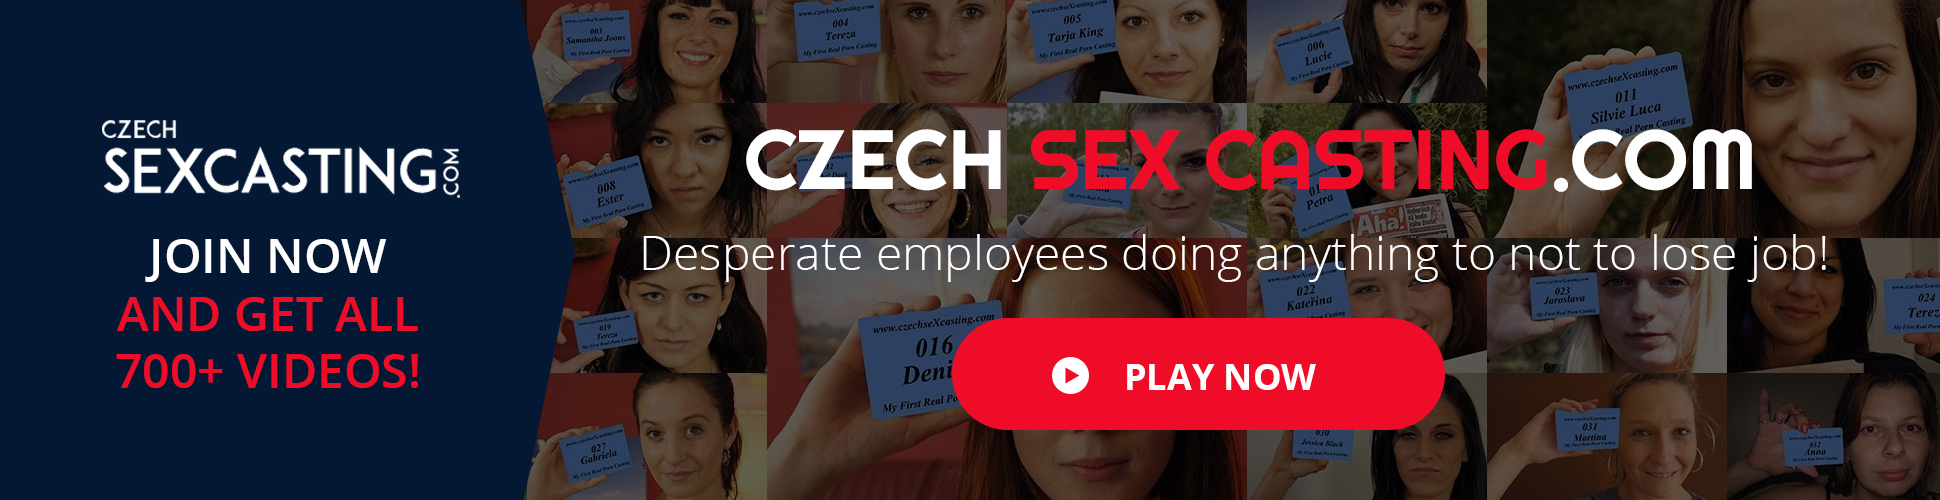 Czech Sex Casting